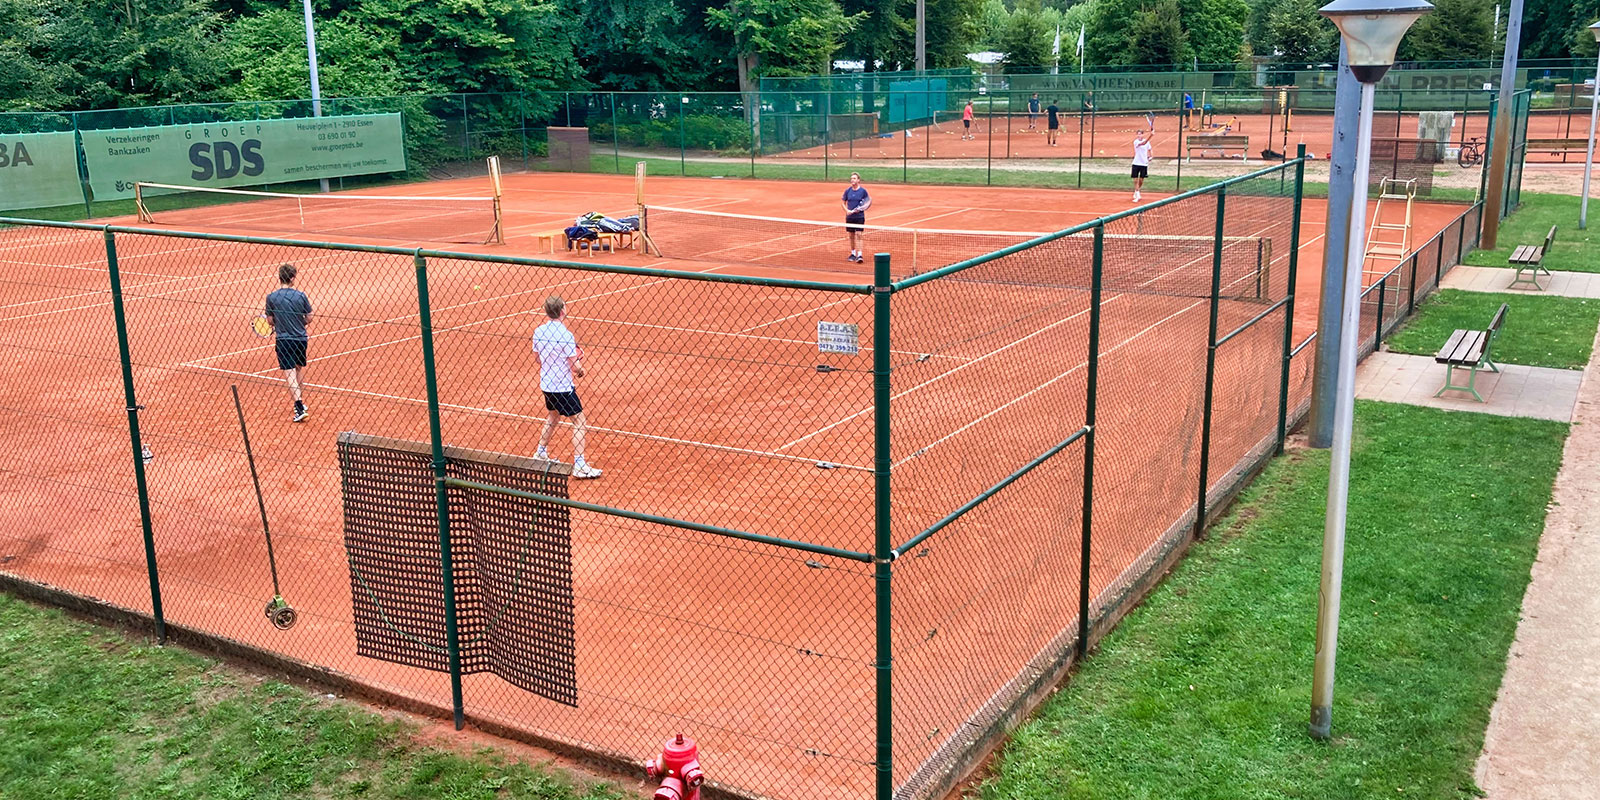 Essense Tennis Club